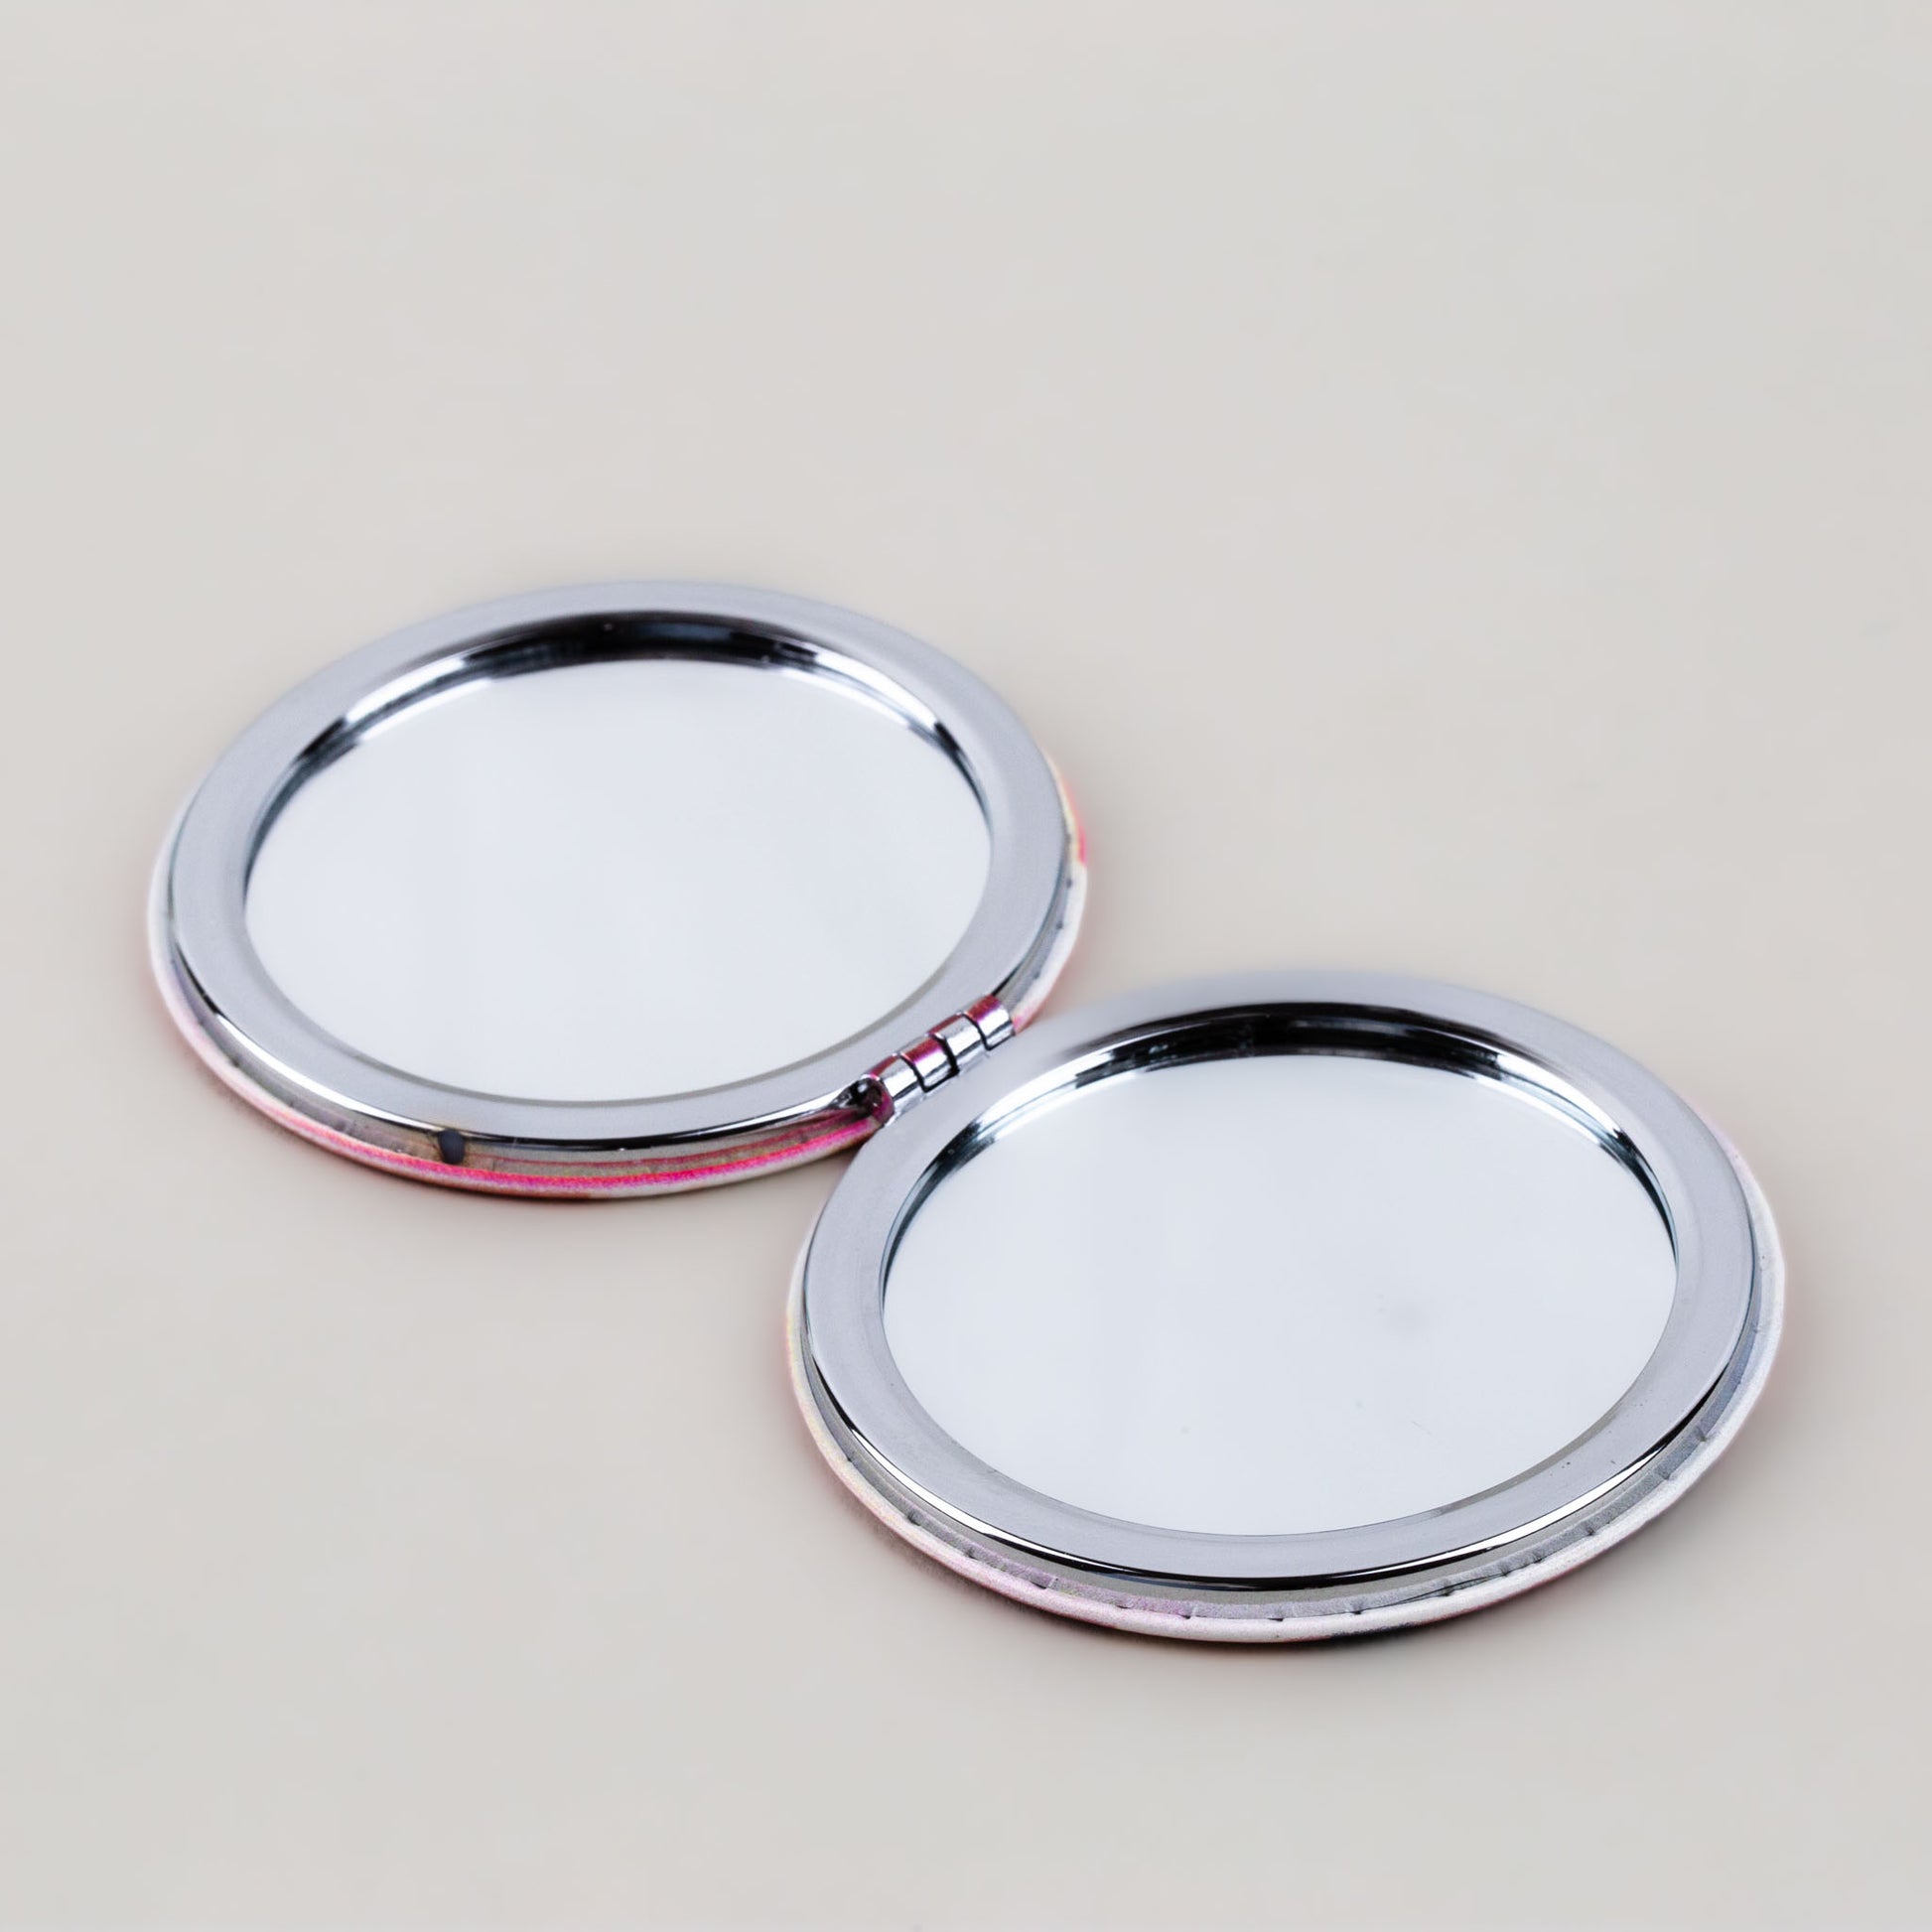 Oglindă de poșetă, formă rotundă cu 2 părți, model sweet - Life